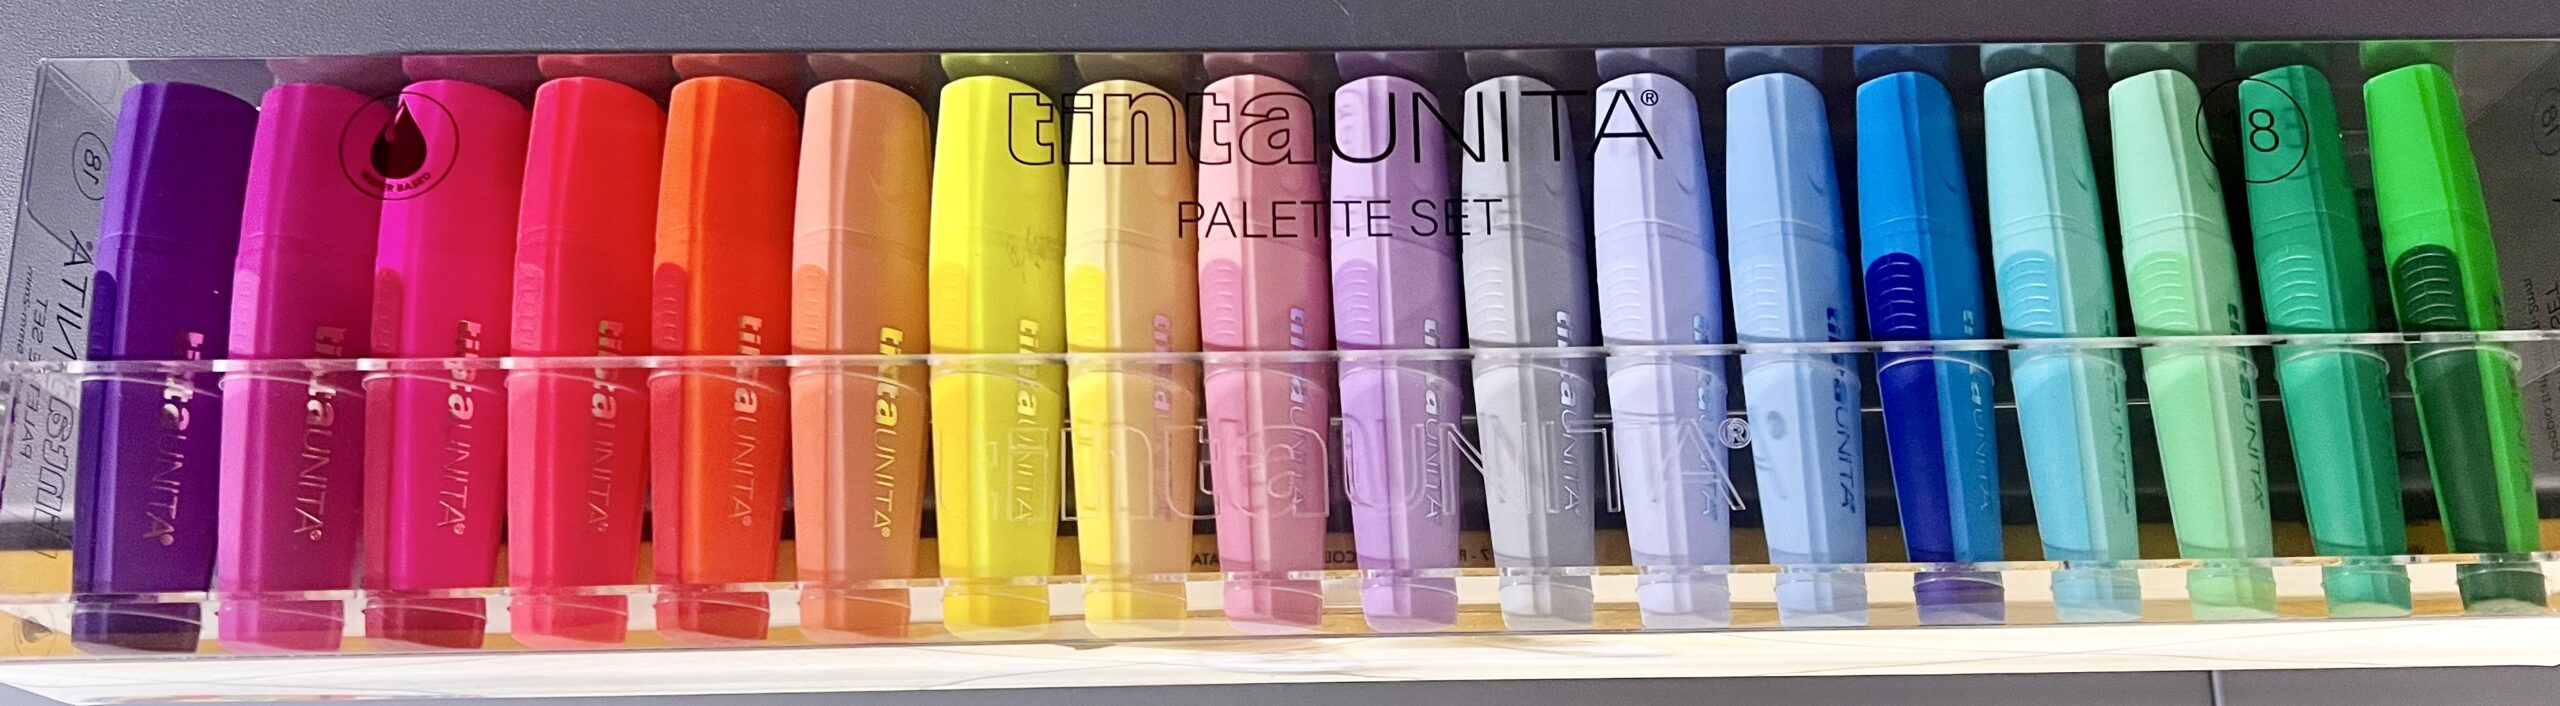 tinta unita palette evidenziatori da 18 colori – Cartolibreria Orsino